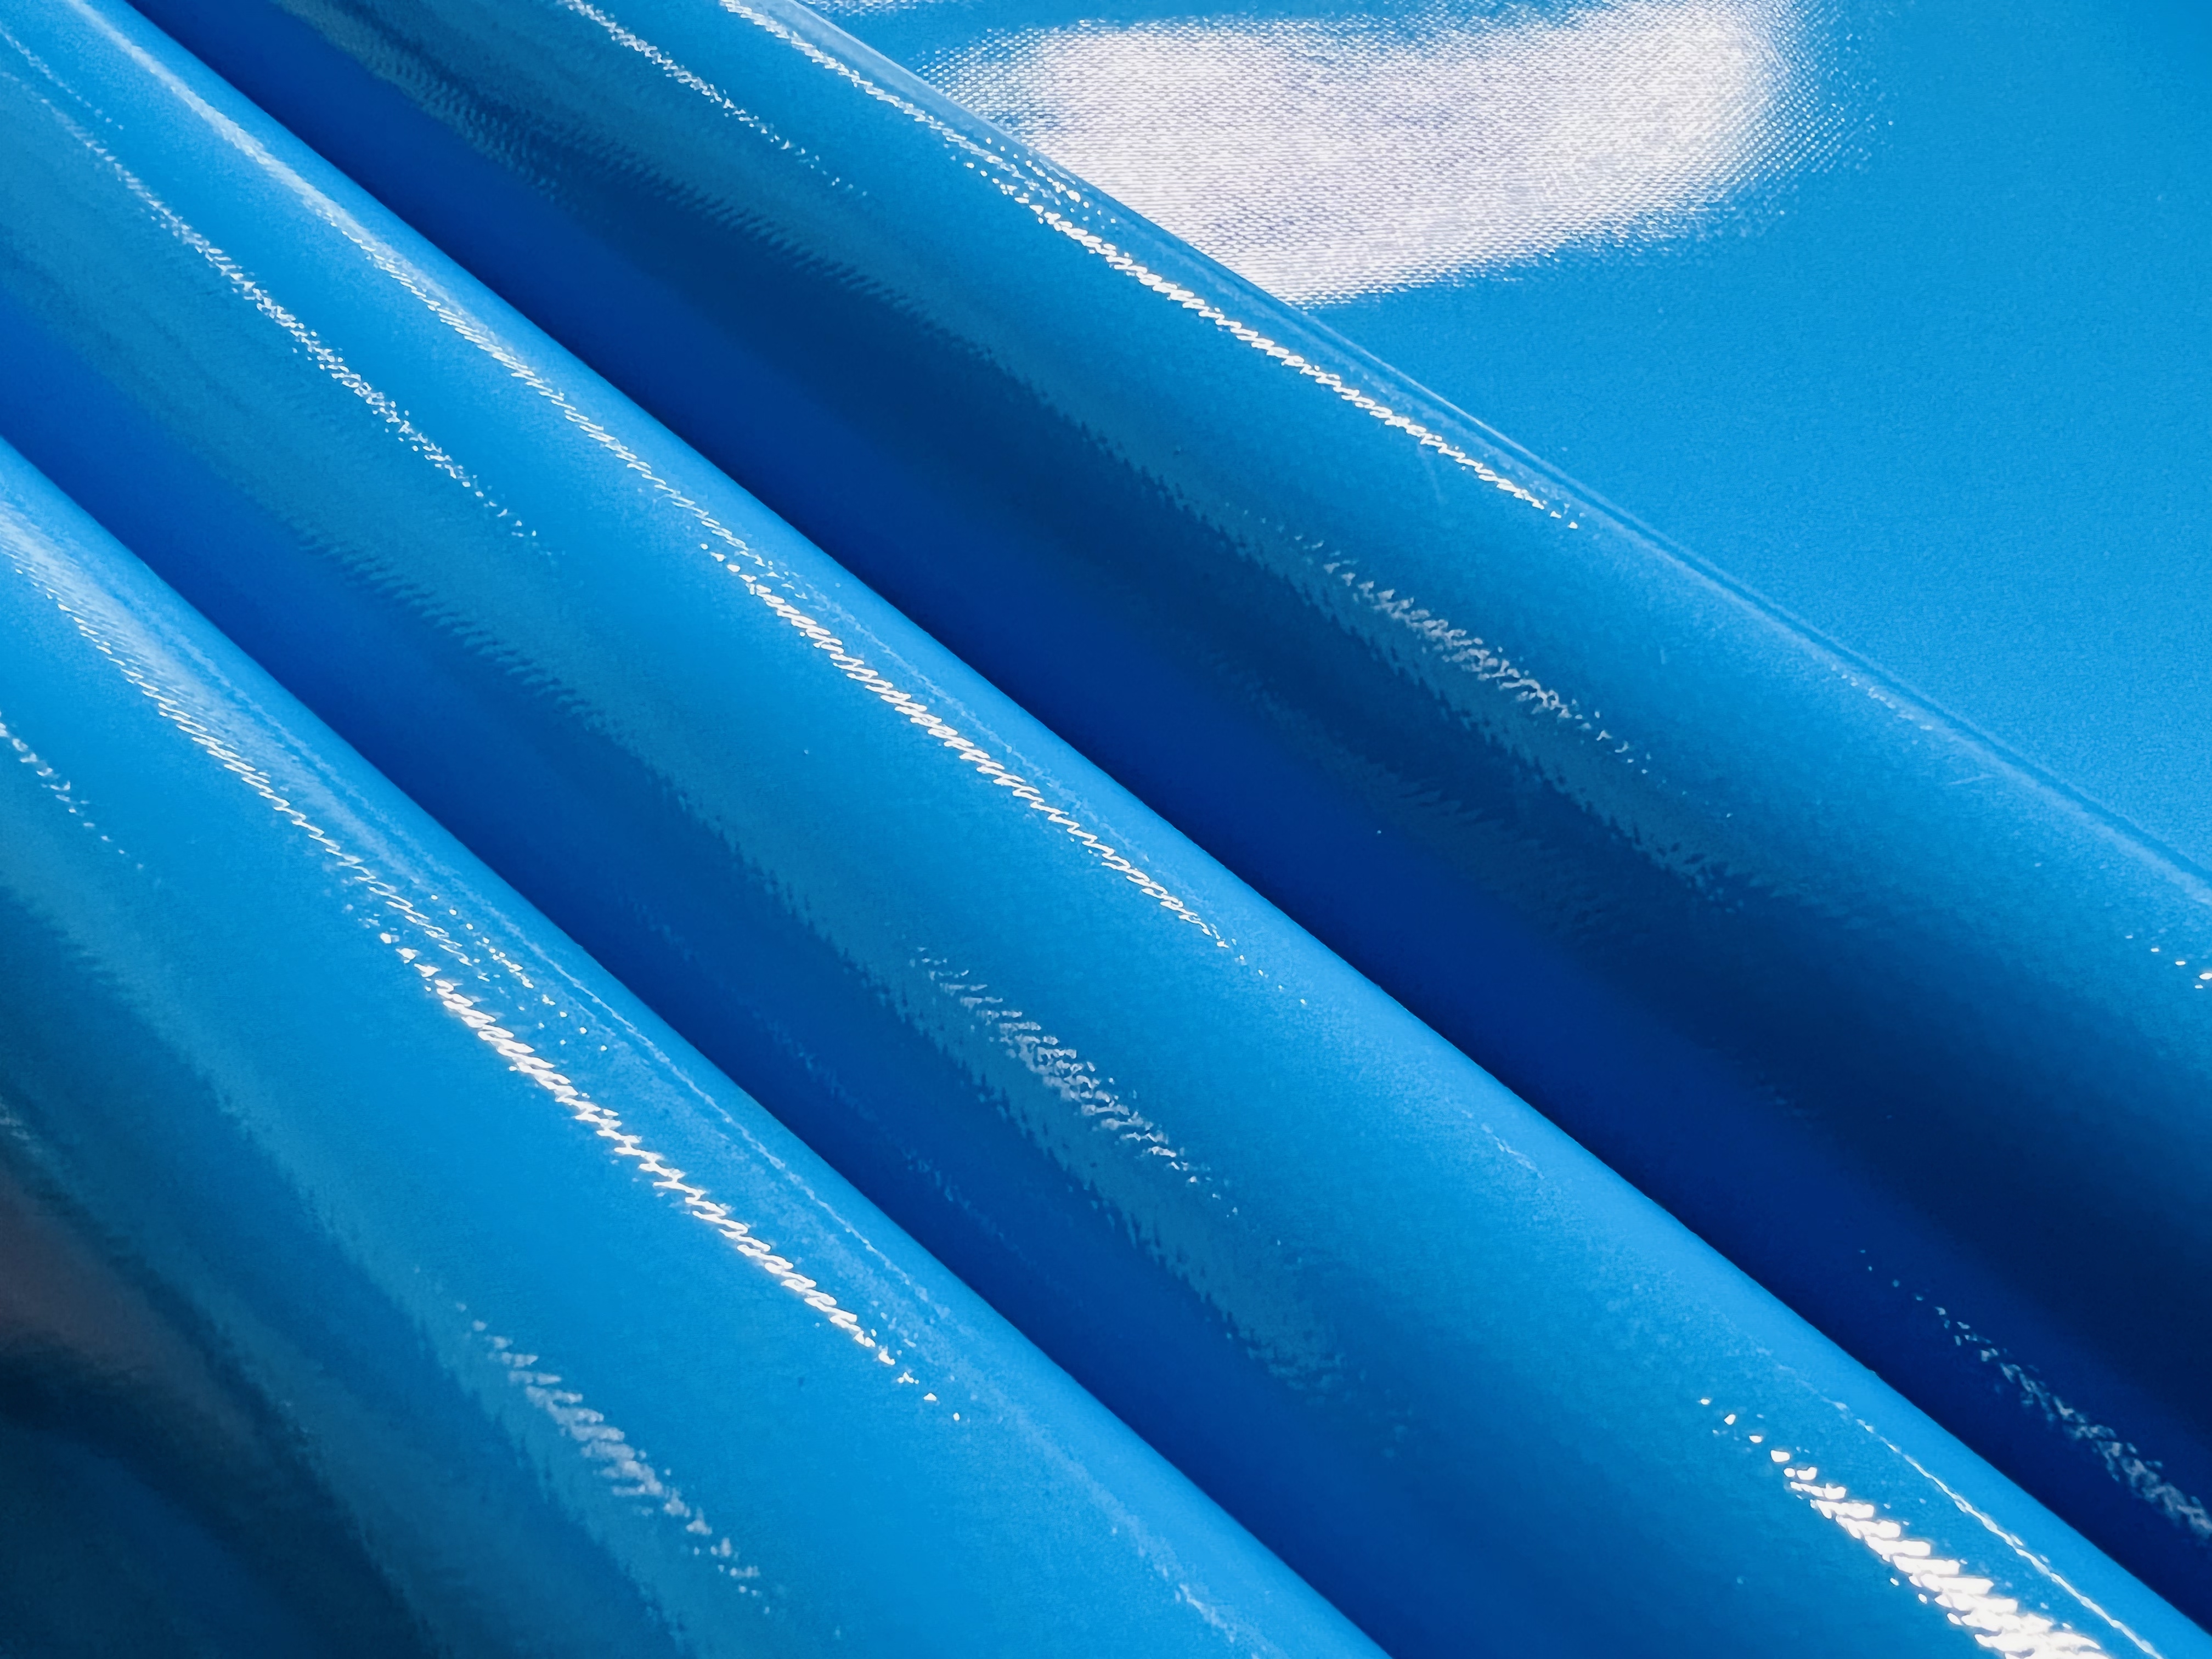 Blue pvc coated mesh tarpaulin,blue tarpaulin,tarpaulin cover,tarpaulin PVC,waterproof tarpaulin